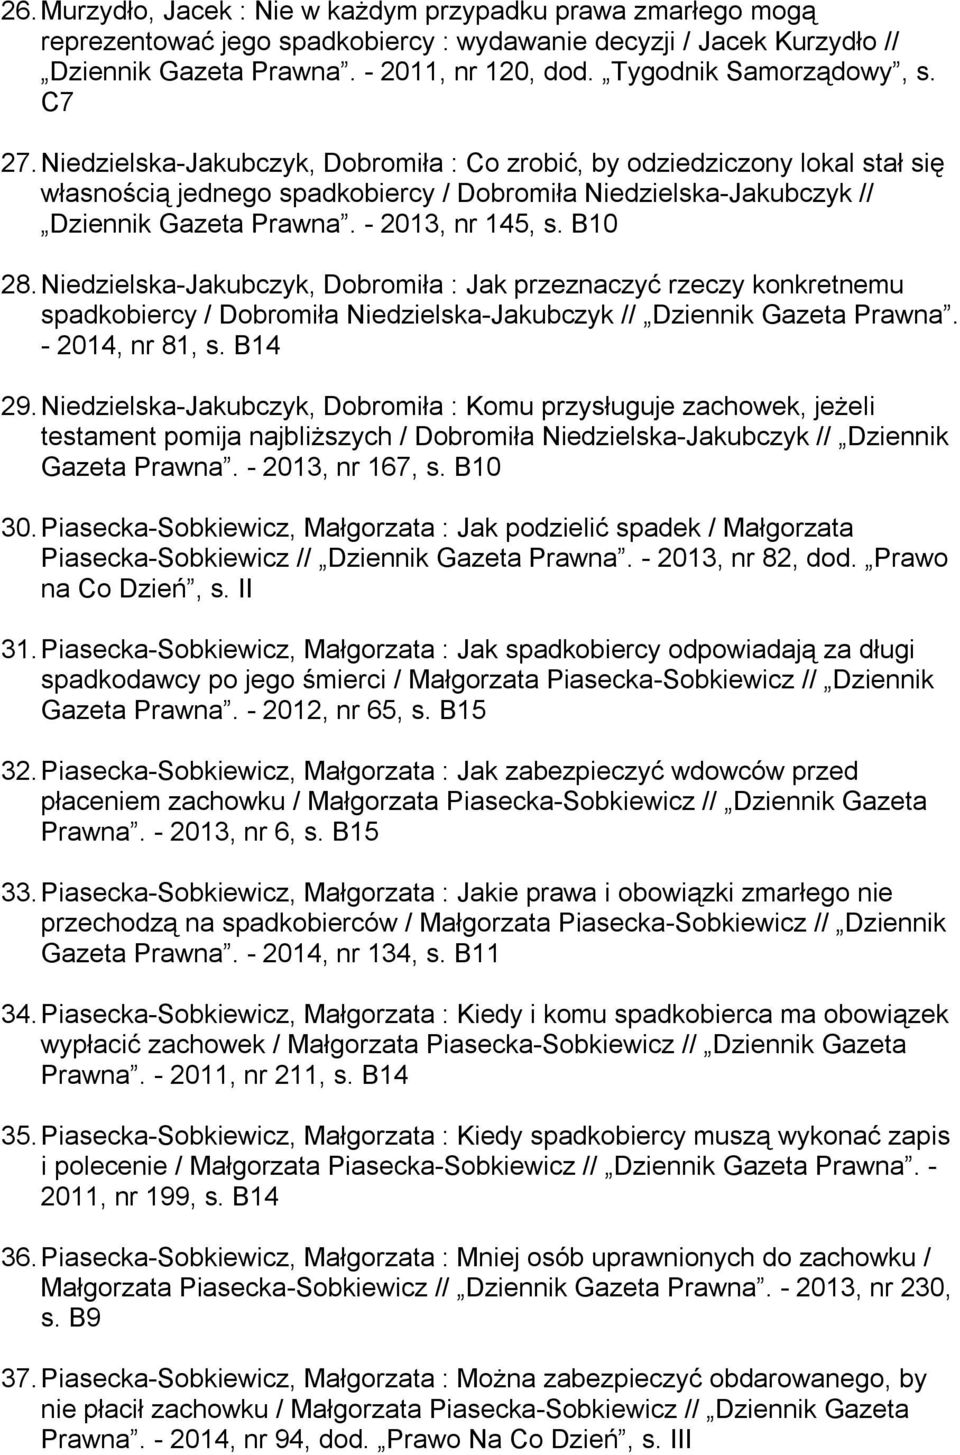 Niedzielska-Jakubczyk, Dobromiła : Co zrobić, by odziedziczony lokal stał się własnością jednego spadkobiercy / Dobromiła Niedzielska-Jakubczyk // Dziennik Gazeta Prawna. - 2013, nr 145, s. B10 28.